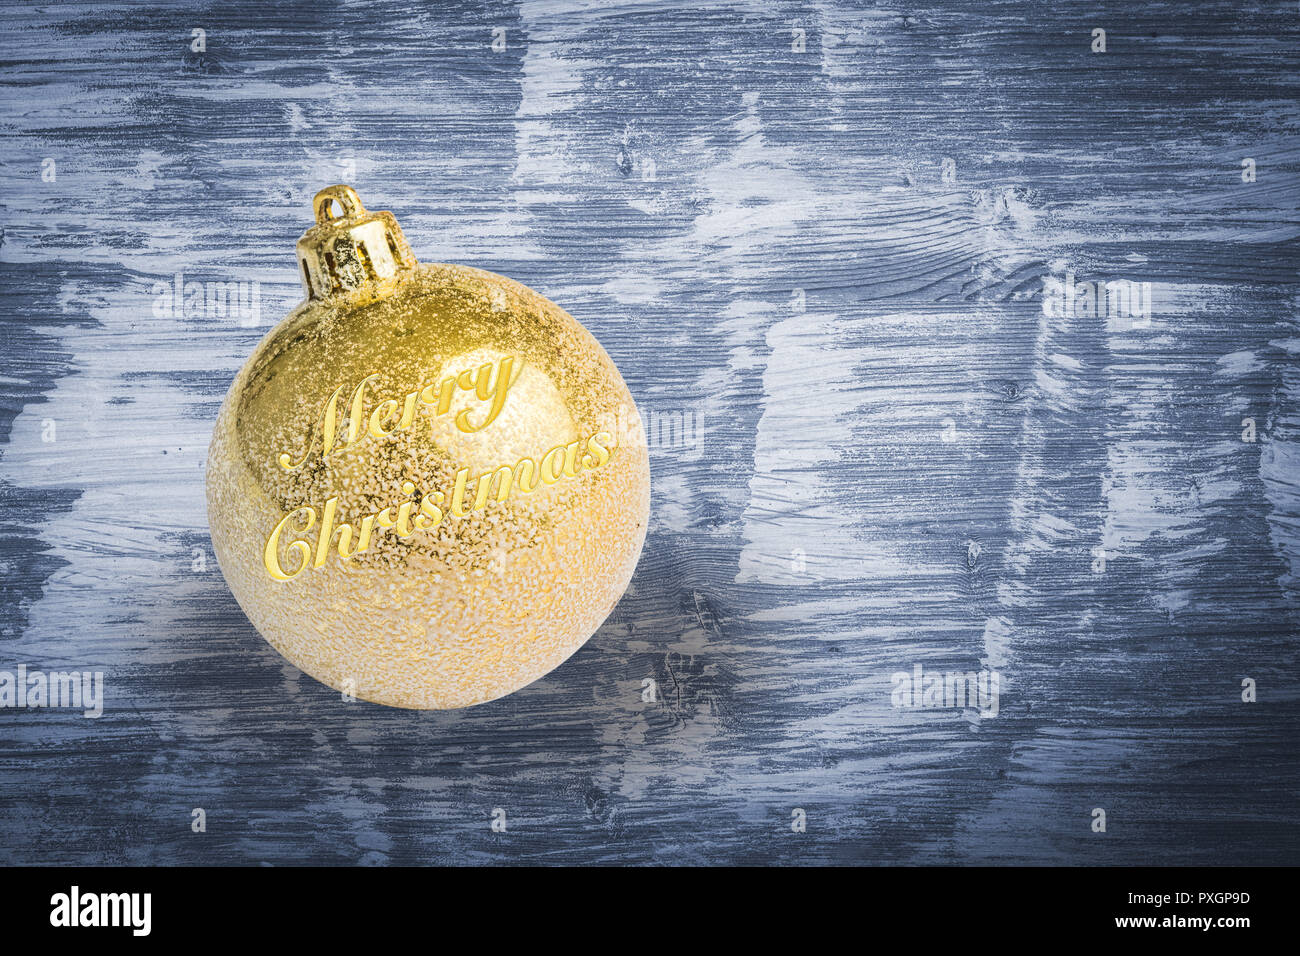 Christmas tree ball with Marry Christmas Stock Photo